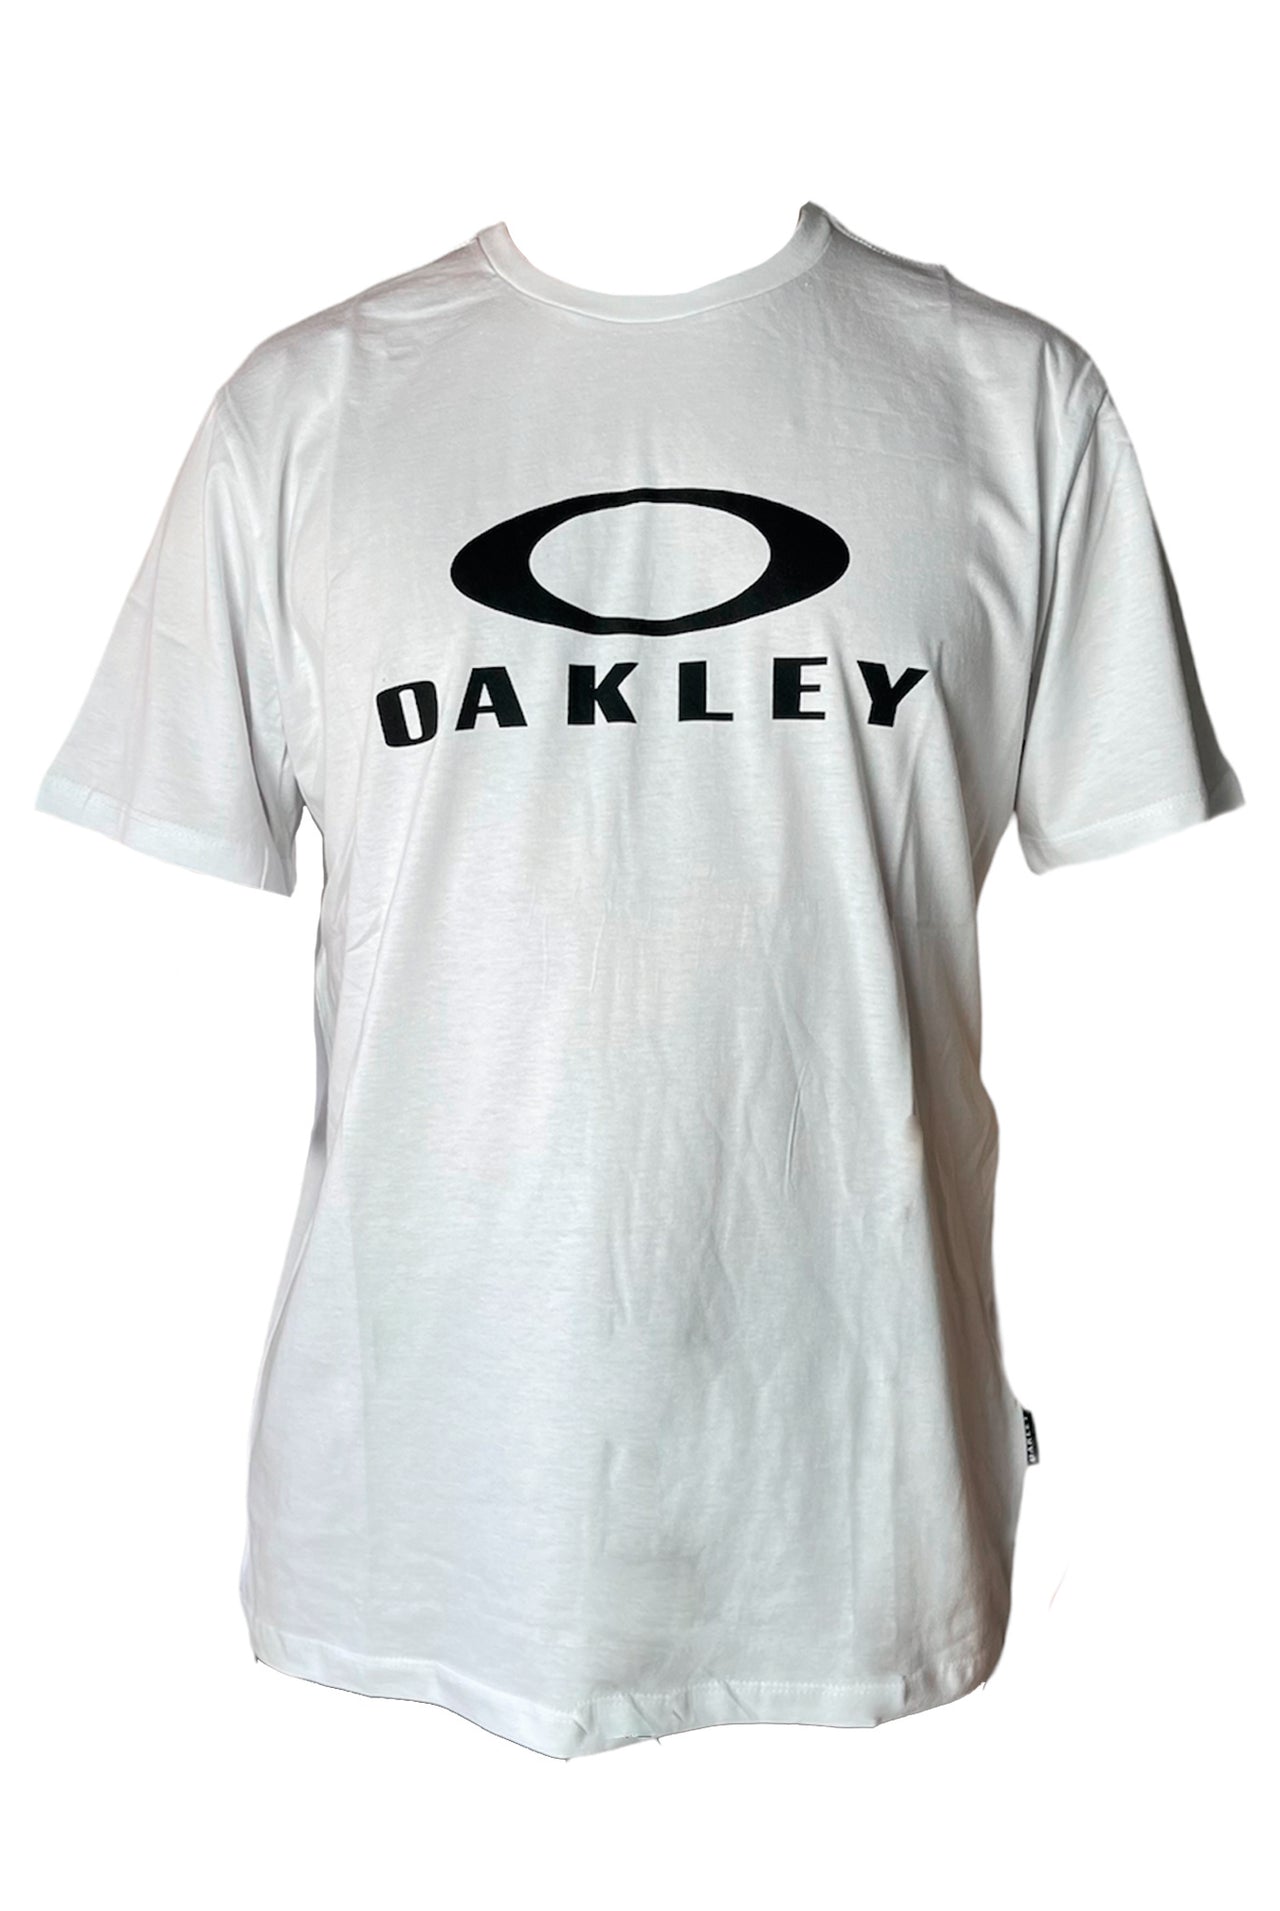 Camiseta Oakley  white